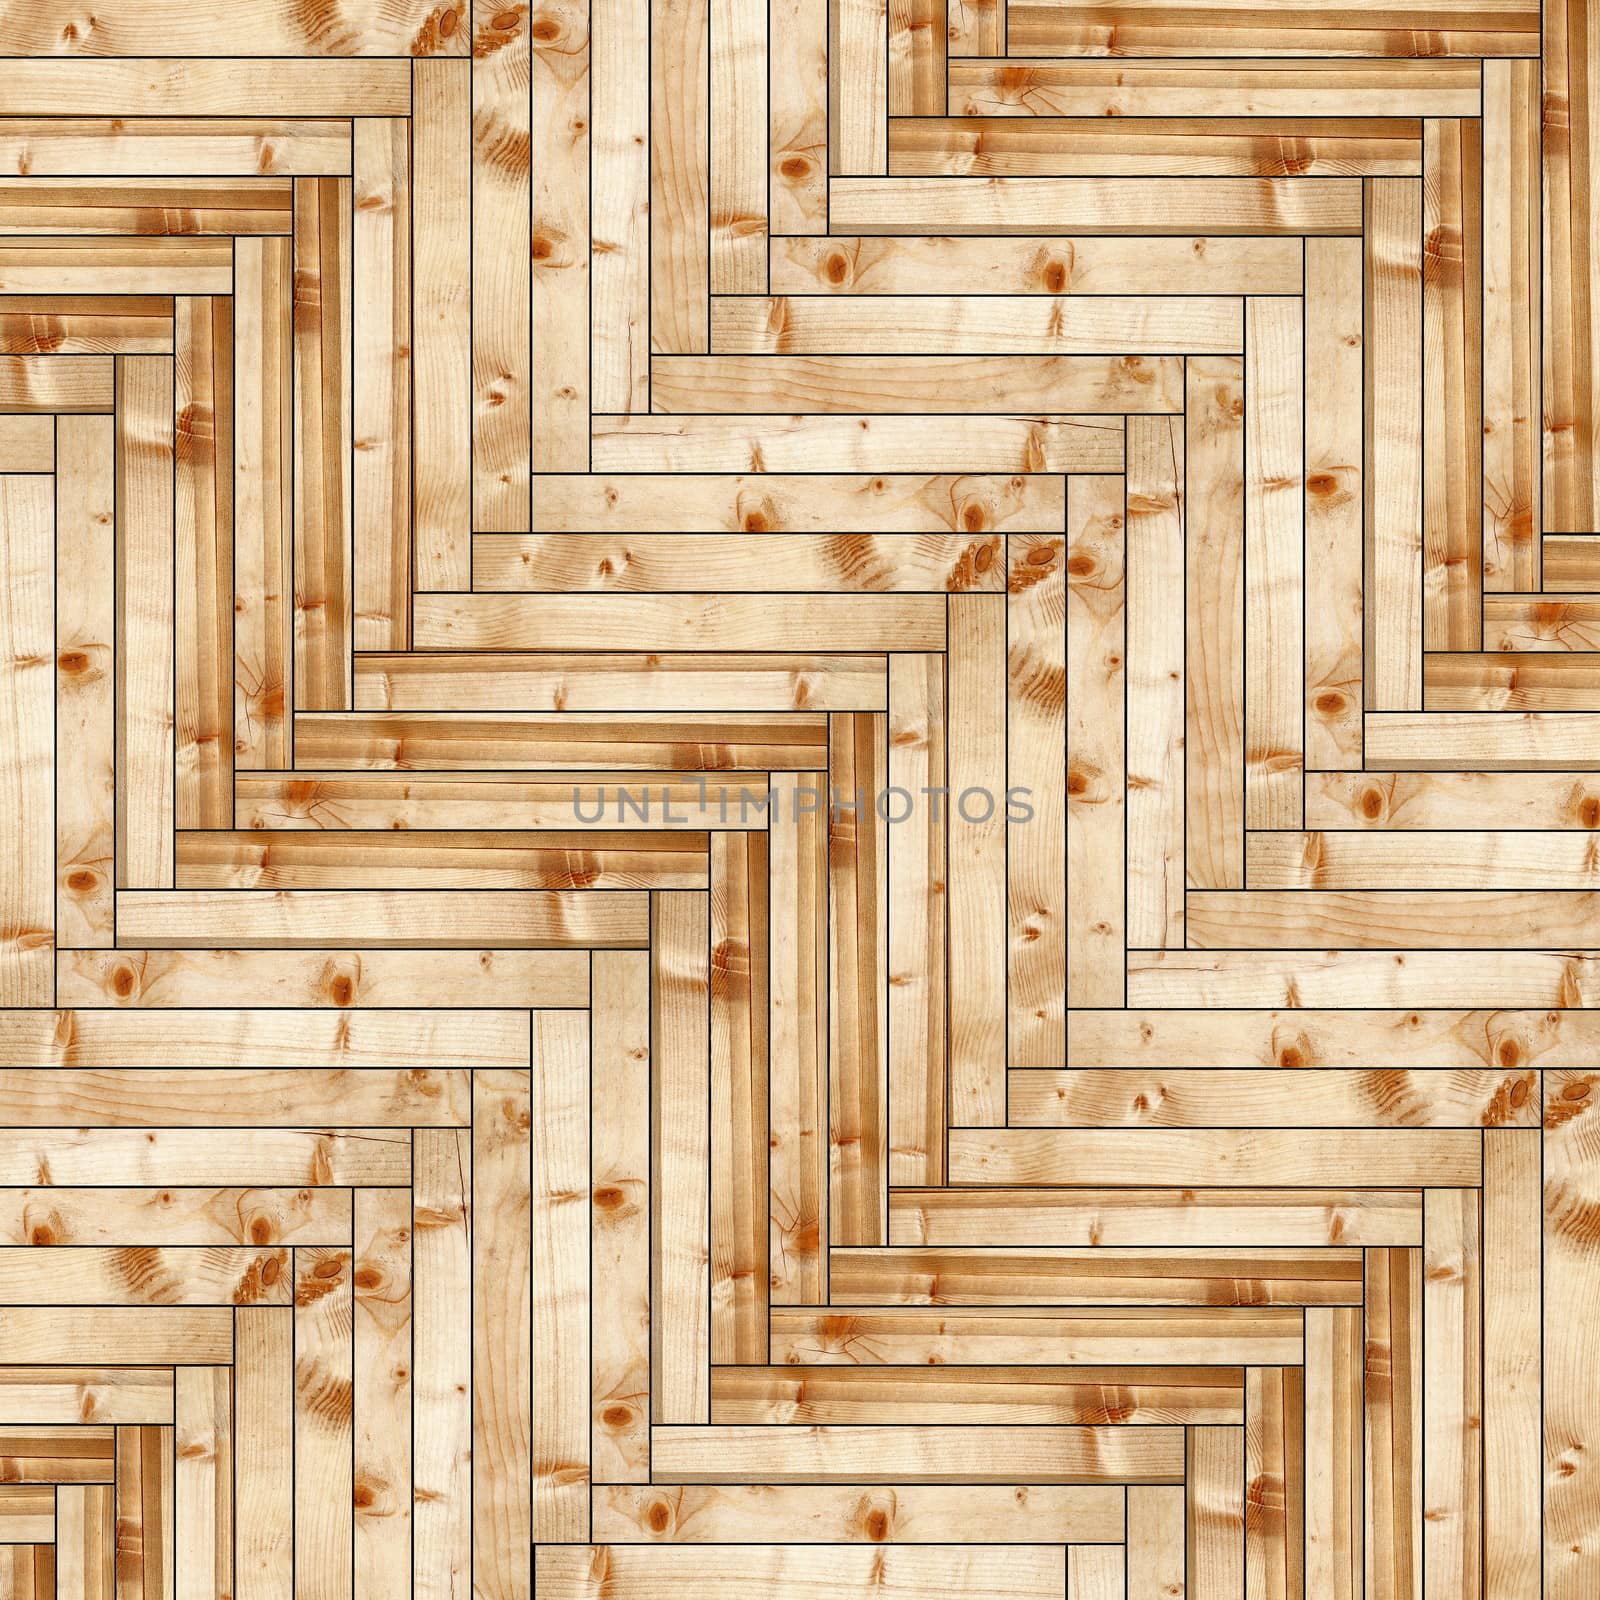 fir wood parquet design for floor finishing